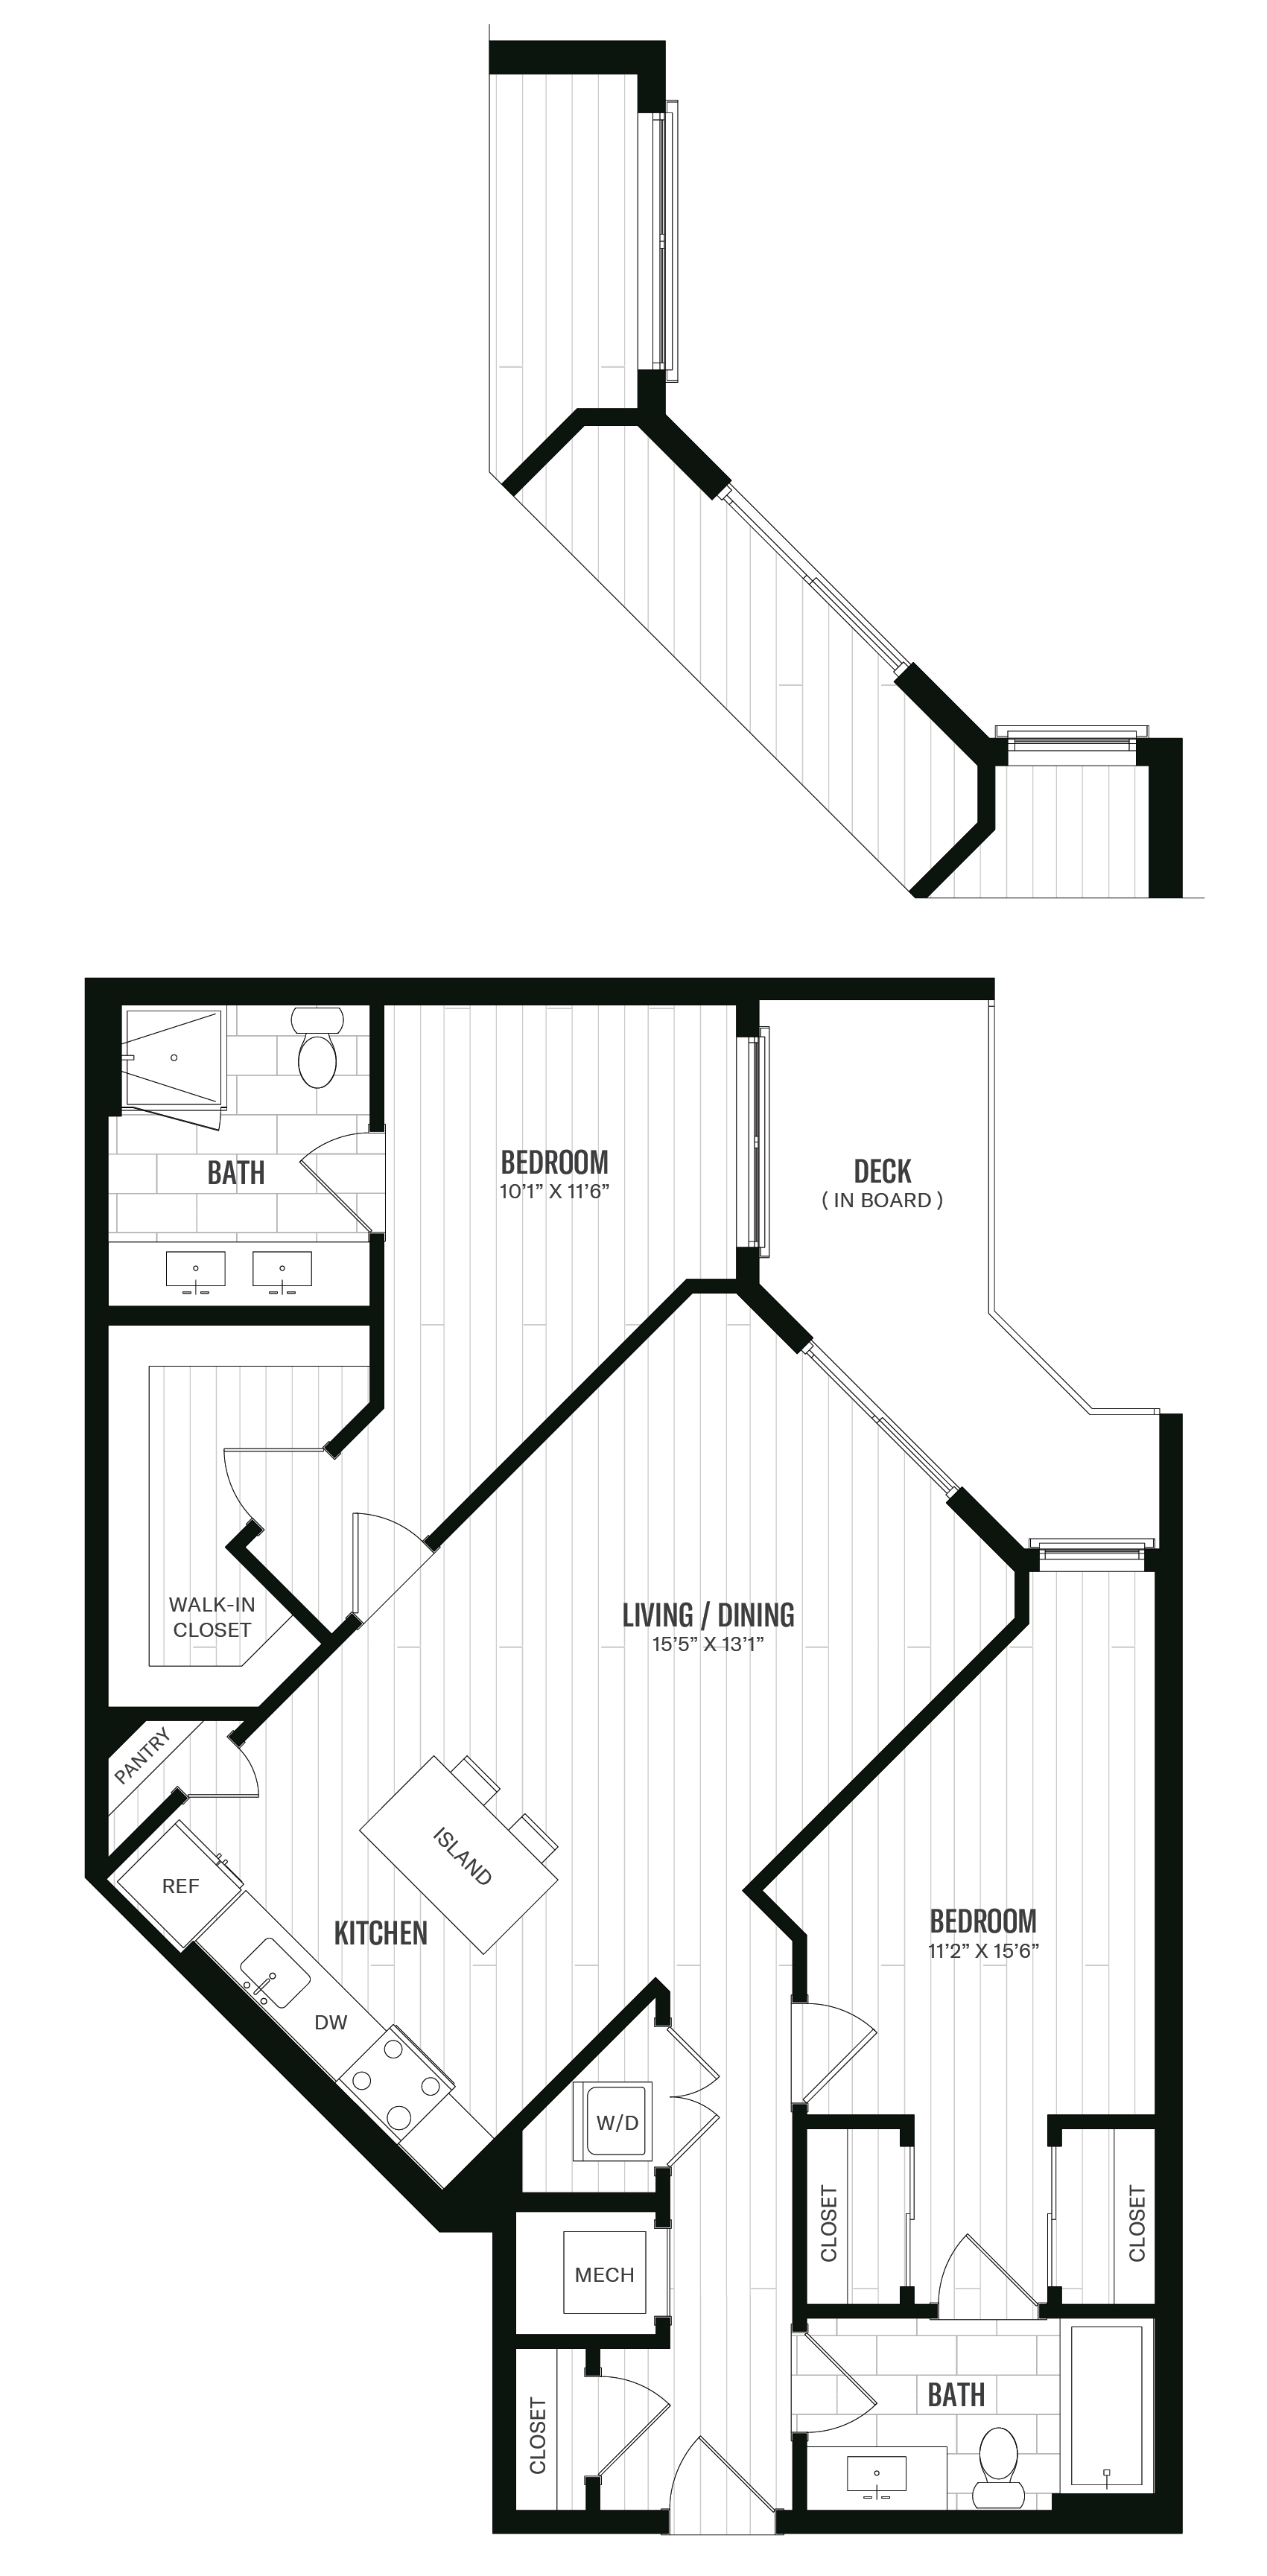 Floorplan image of unit 557